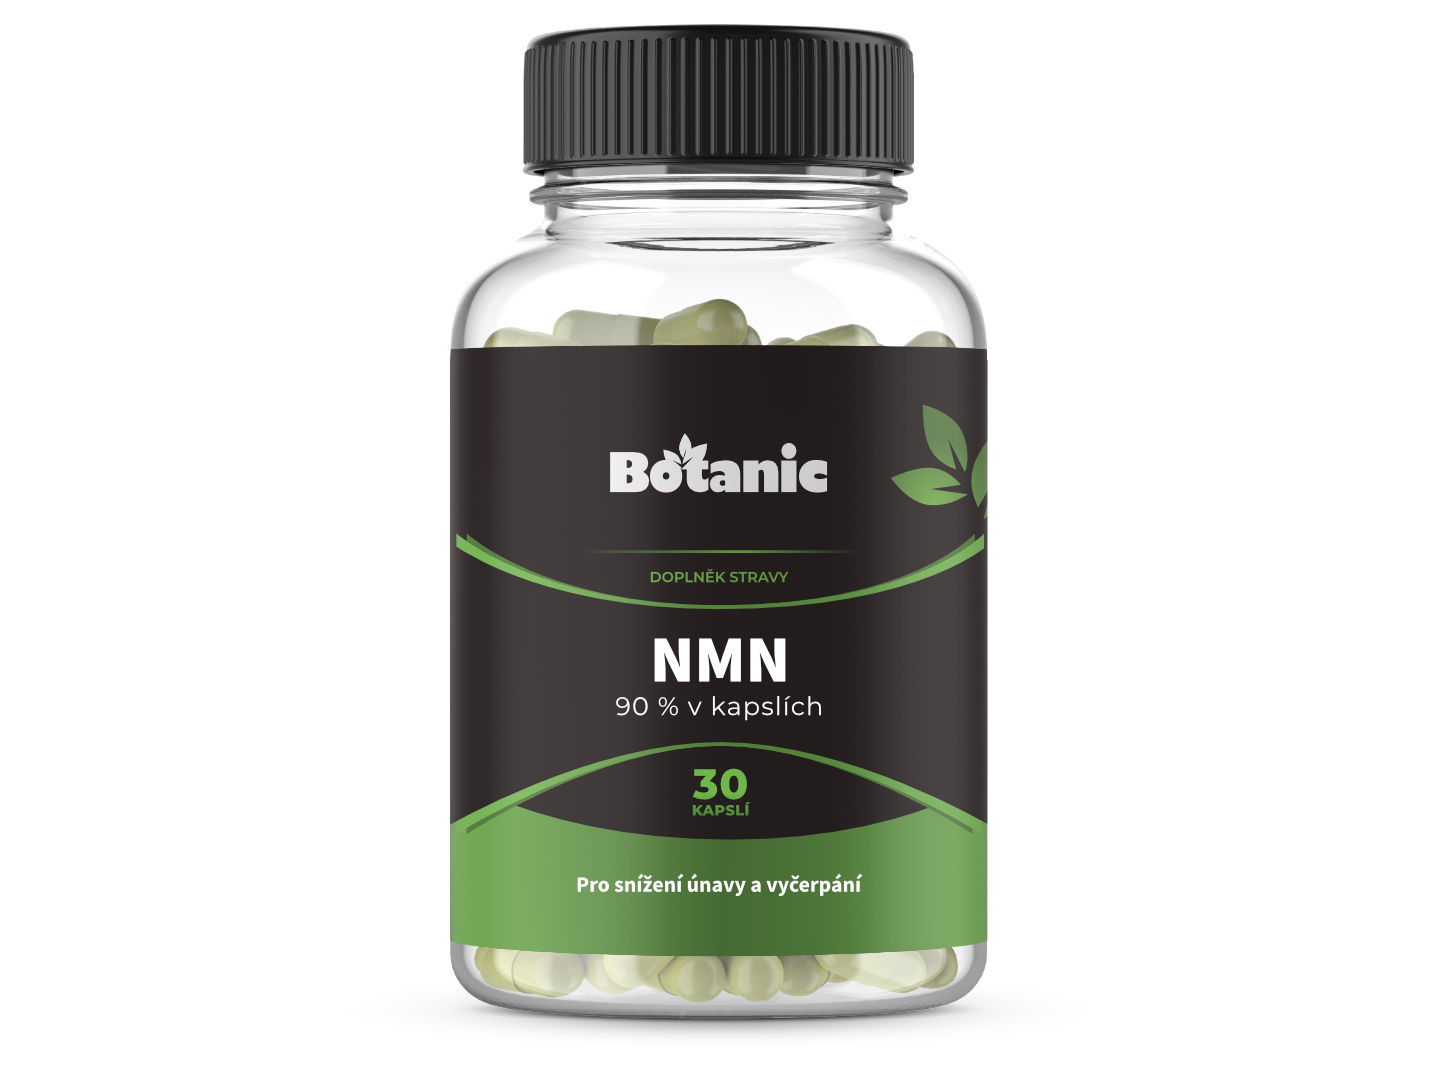 Botanic NMN - 90 % v kapslích 30kap.